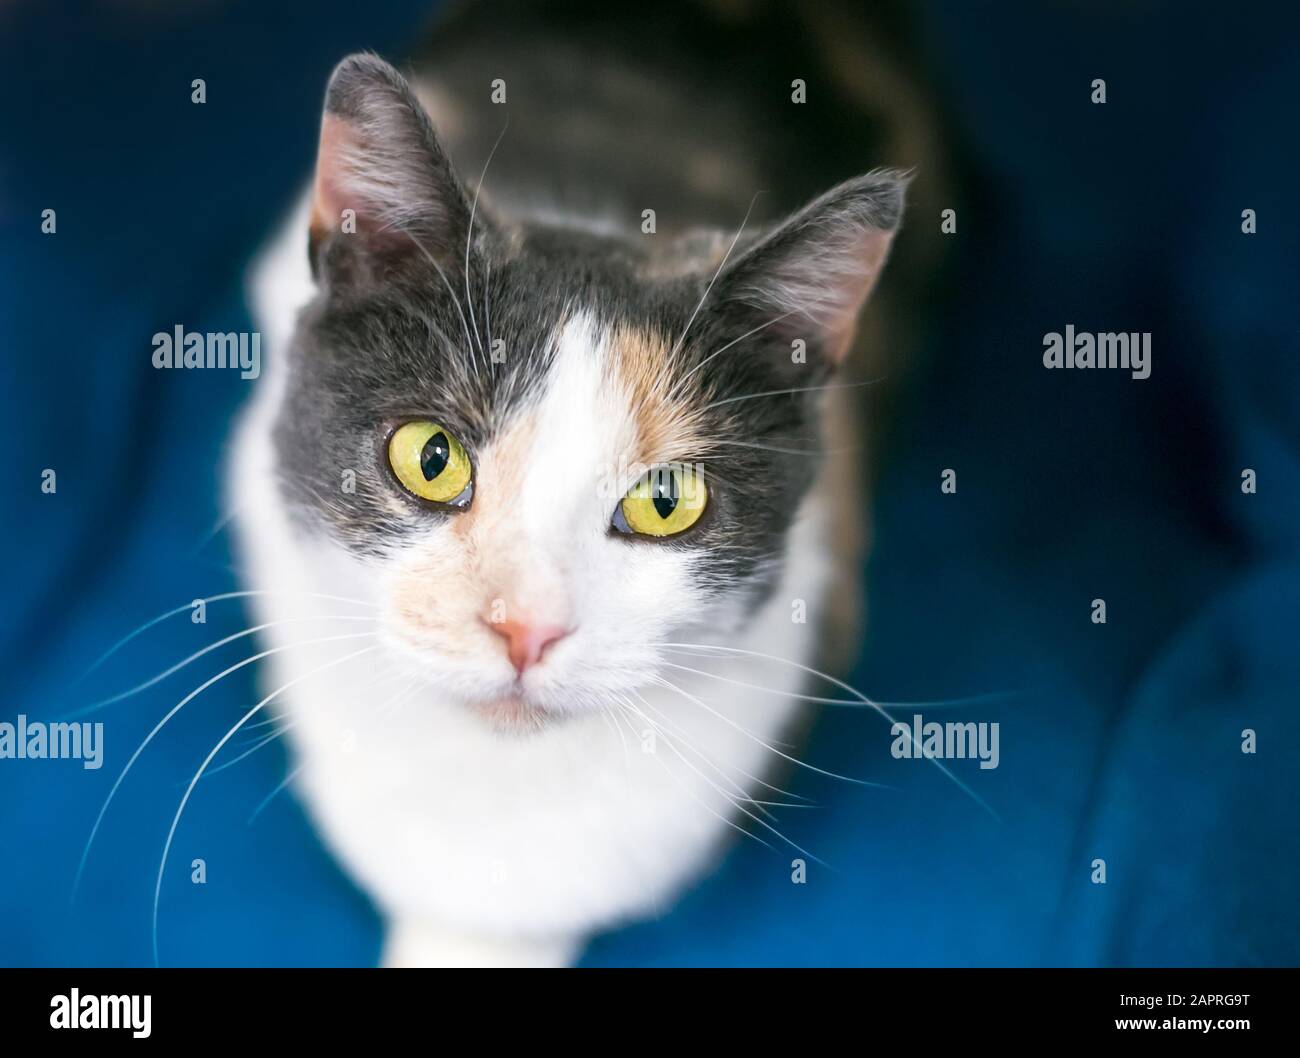 Un chat De shorthair Domestique Dilué Calico avec des yeux jaunes, assis sur une couverture bleue et regardant vers le haut Banque D'Images